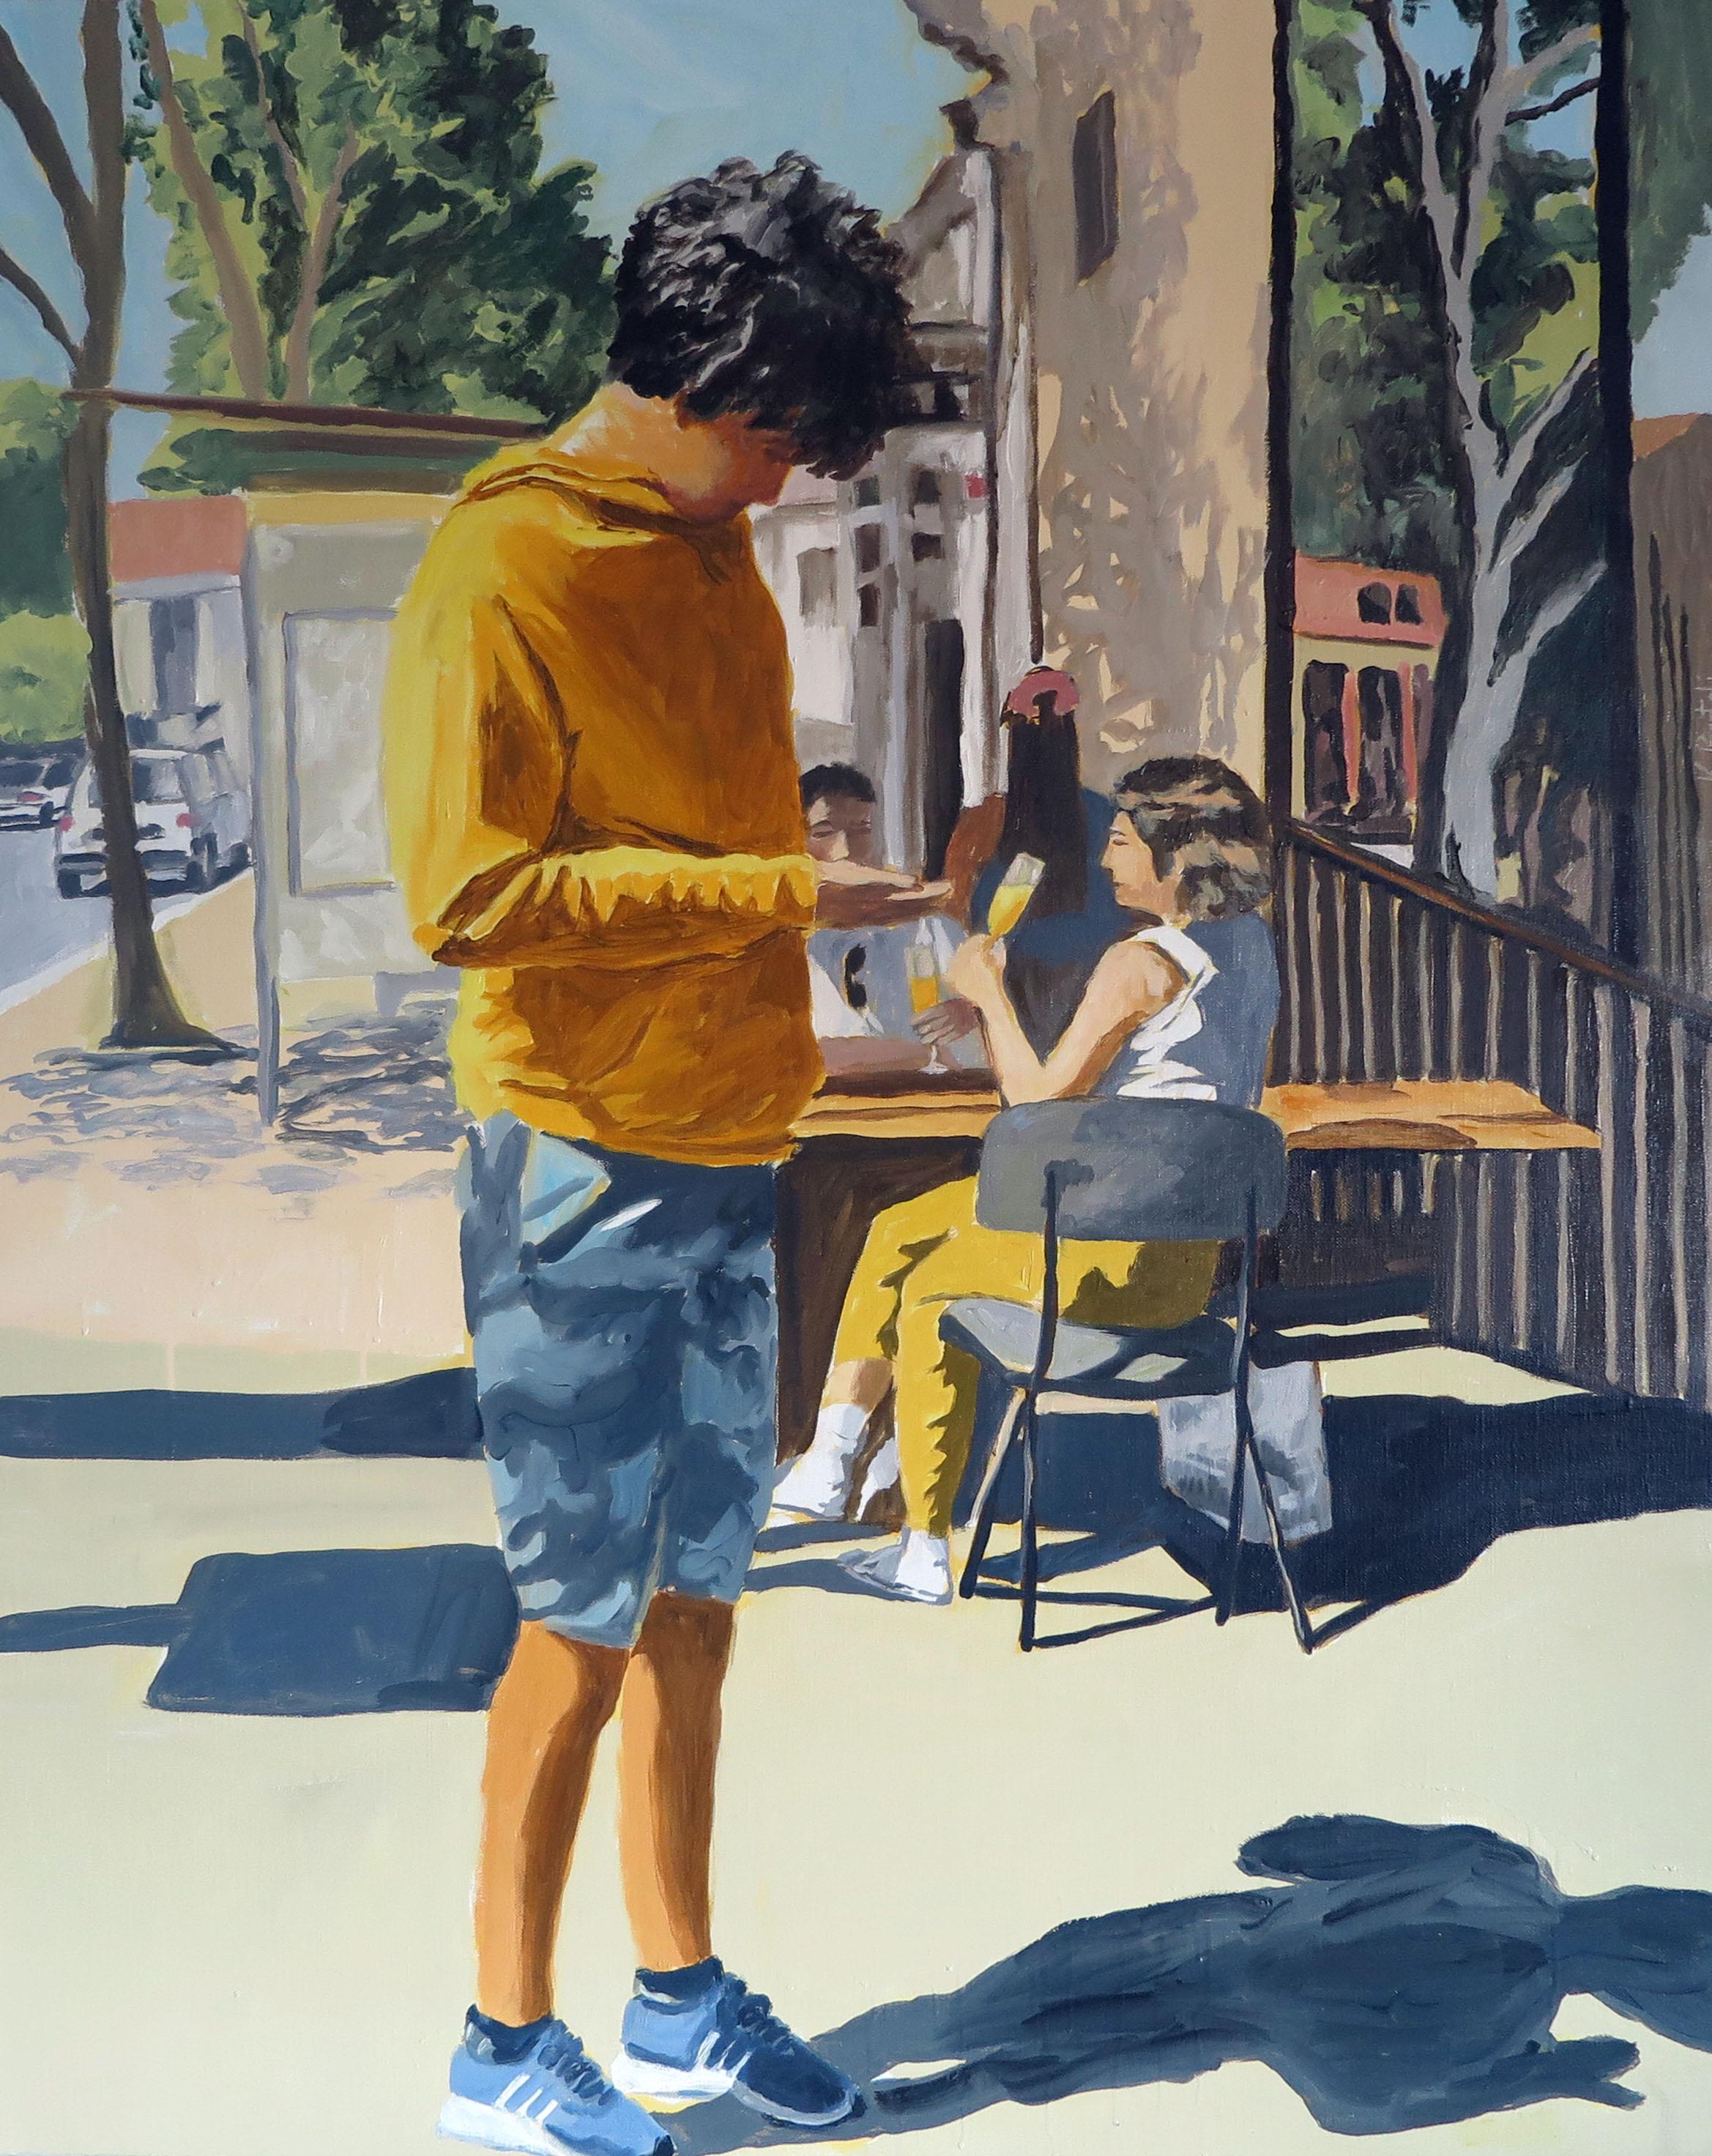 Öl auf Leinen

Karine Bartoli wurde 1971 in Ajaccio geboren. Sie schrieb sich an der Ecole Nationale Superieure des Beaux Arts in Marseille ein, wo sie 1997 ihren Abschluss machte. Seitdem hat sie sich der Malerei gewidmet. Ihre Arbeit ist